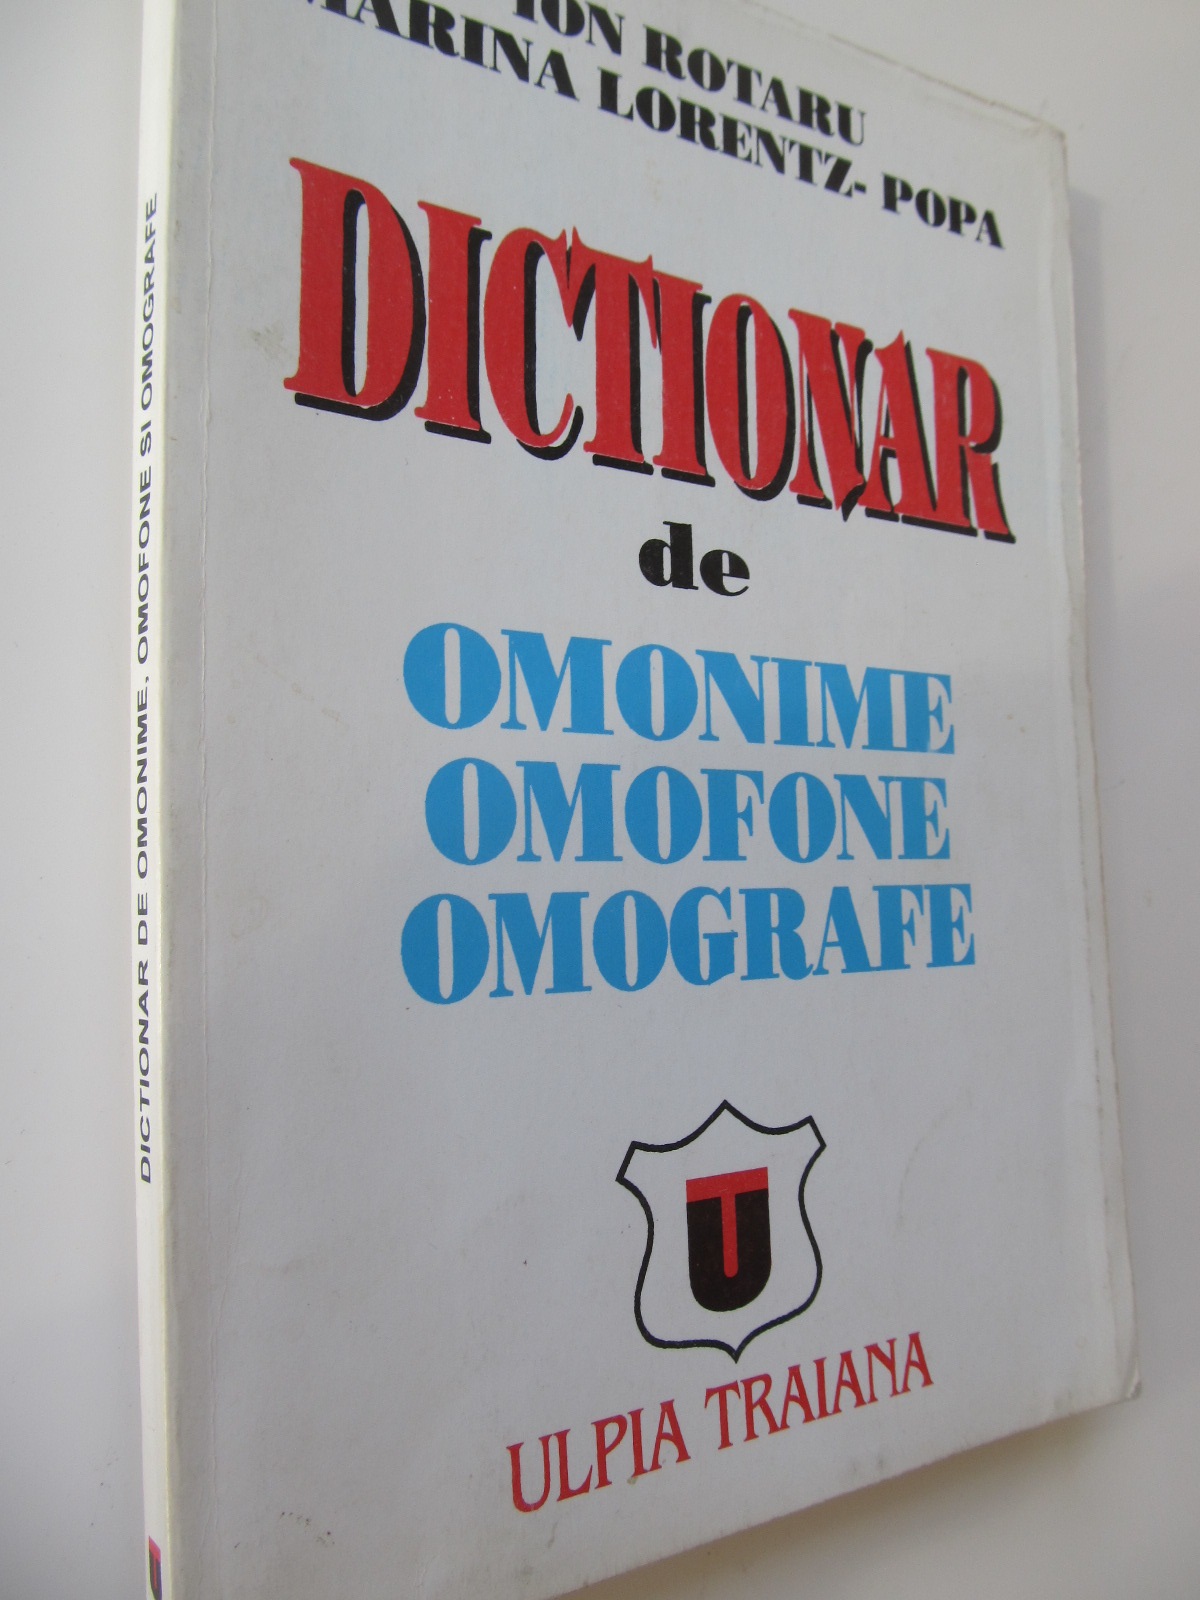 Dictionar de omonime omofone omografe - Ion Rotaru , Marina Lorentz Popa | Detalii carte